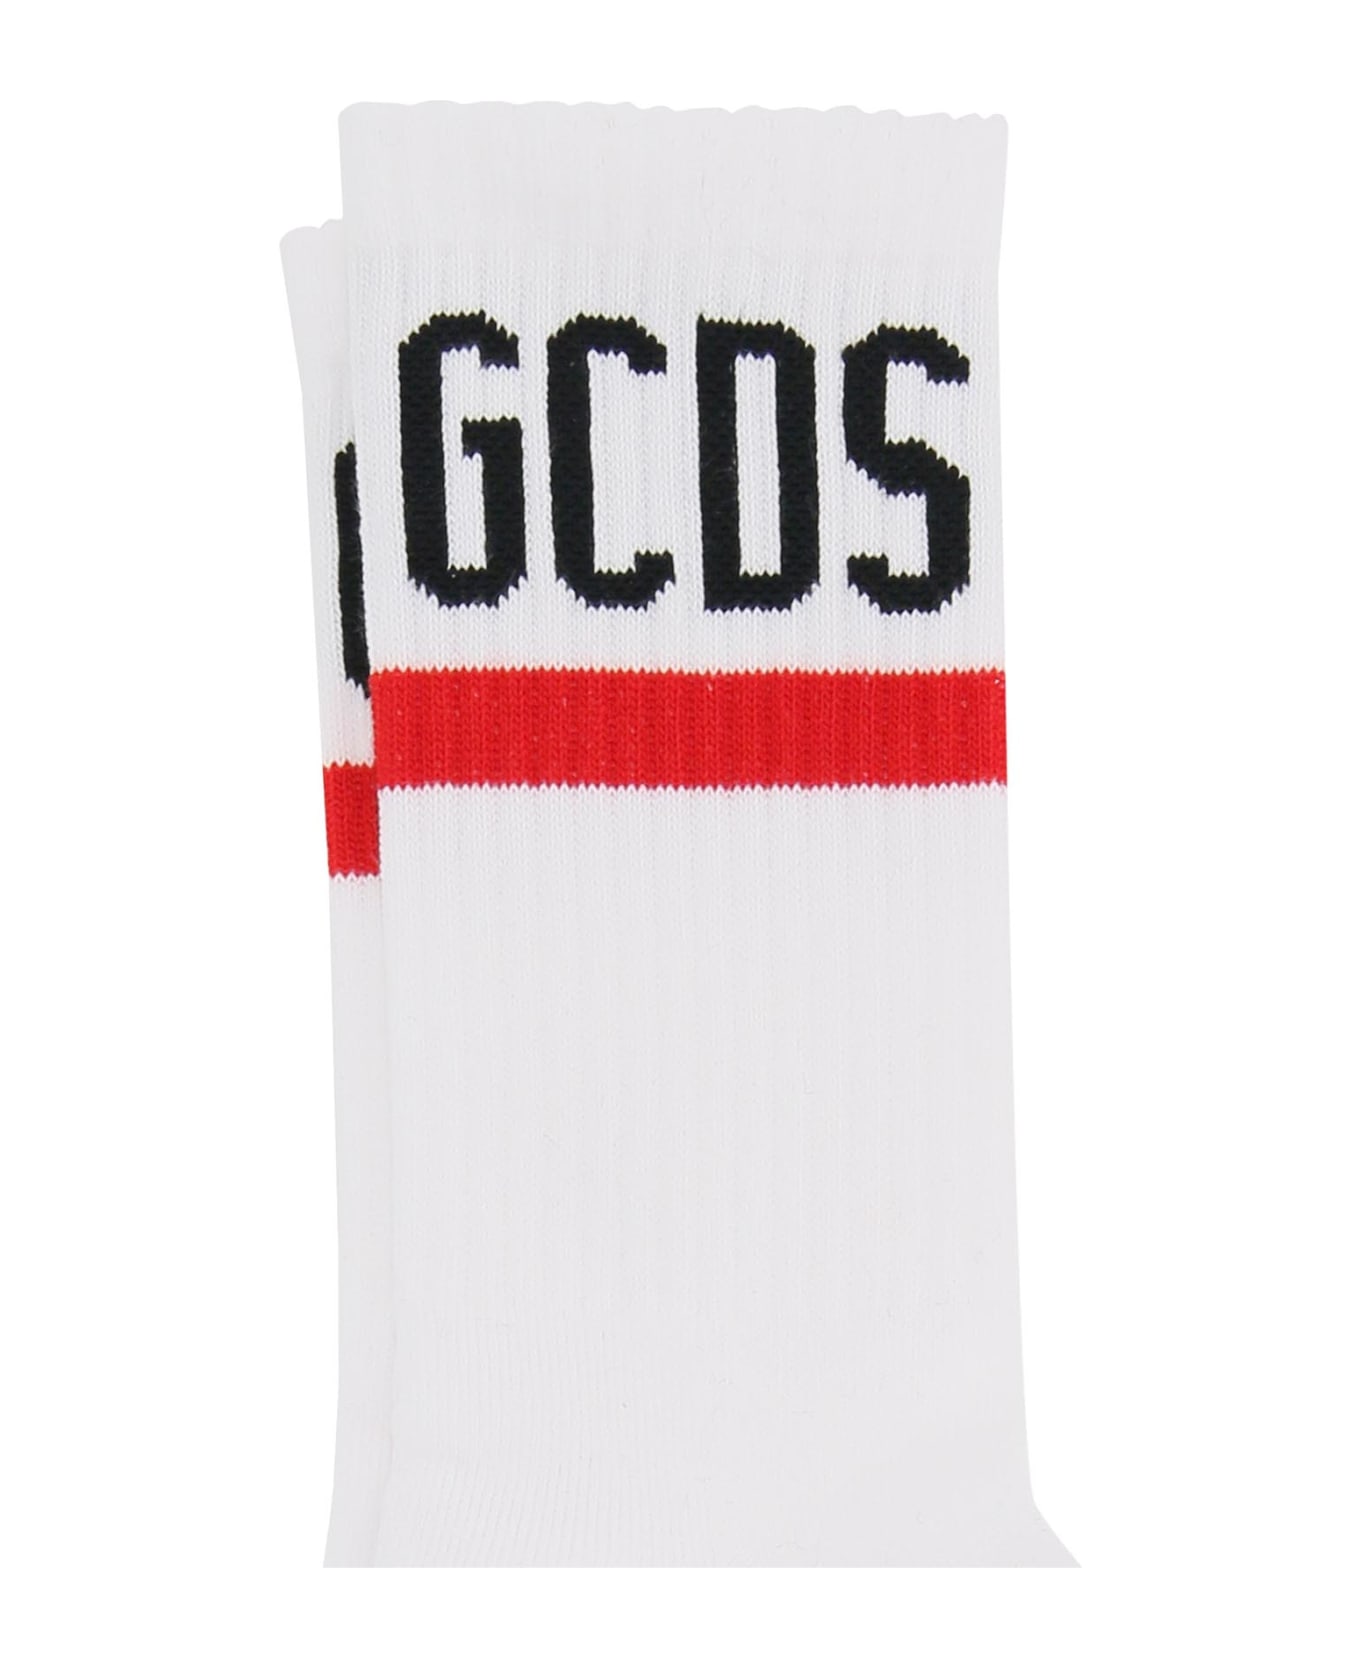 GCDS Sports Socks - White 靴下＆タイツ